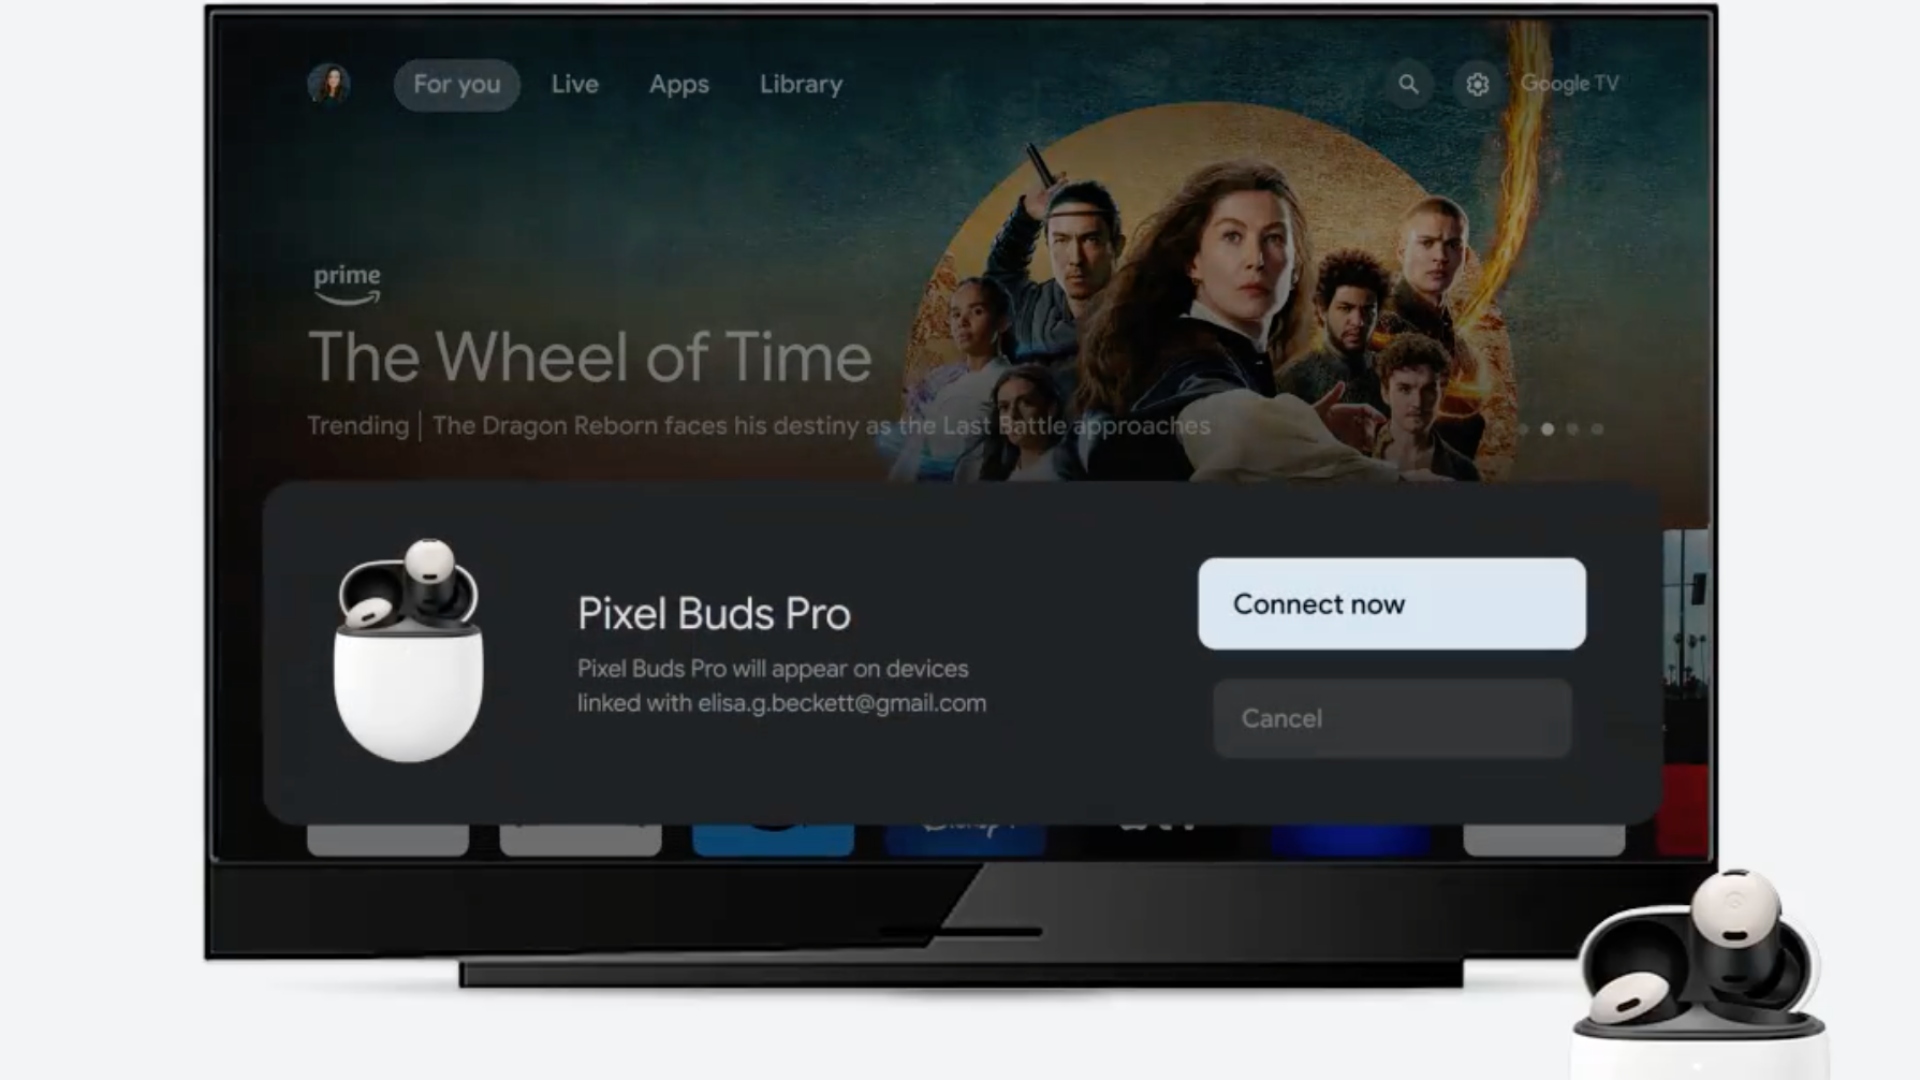 Fast Pair se está implementando ampliamente en más dispositivos Google TV.